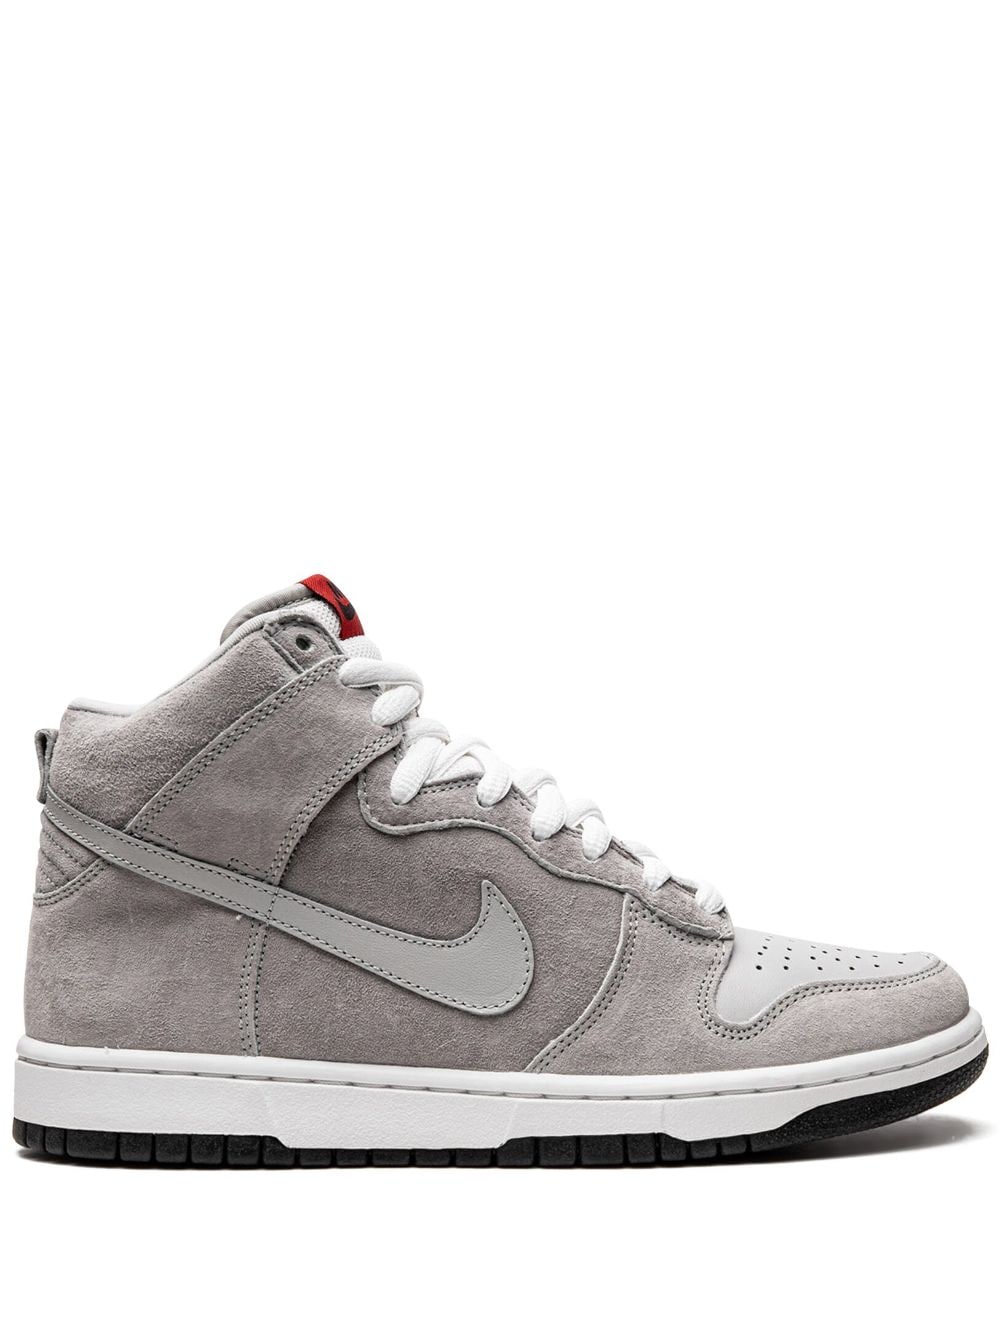 Nike Dunk High Pro Sb Sneakers In Grey